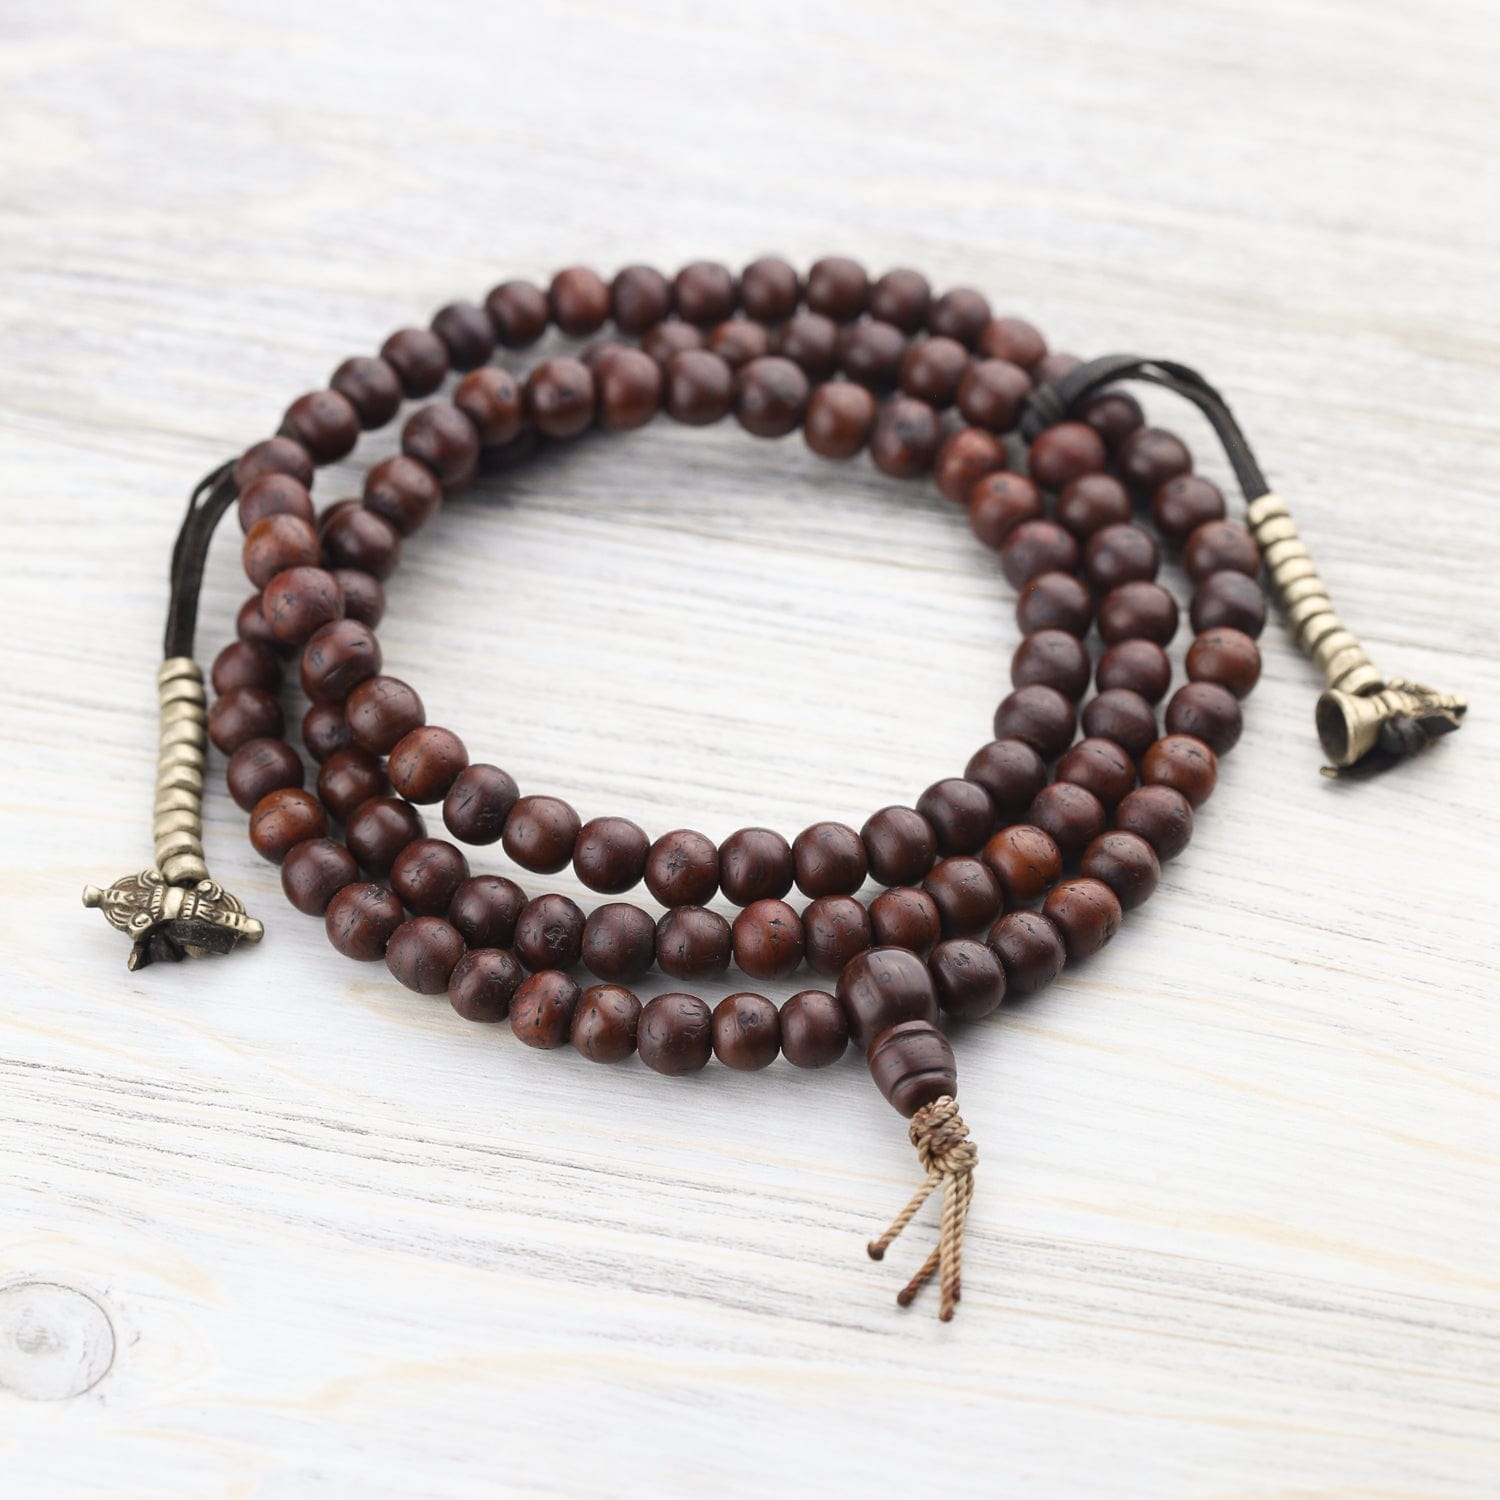 5 types of mala beads. A meditation mala…